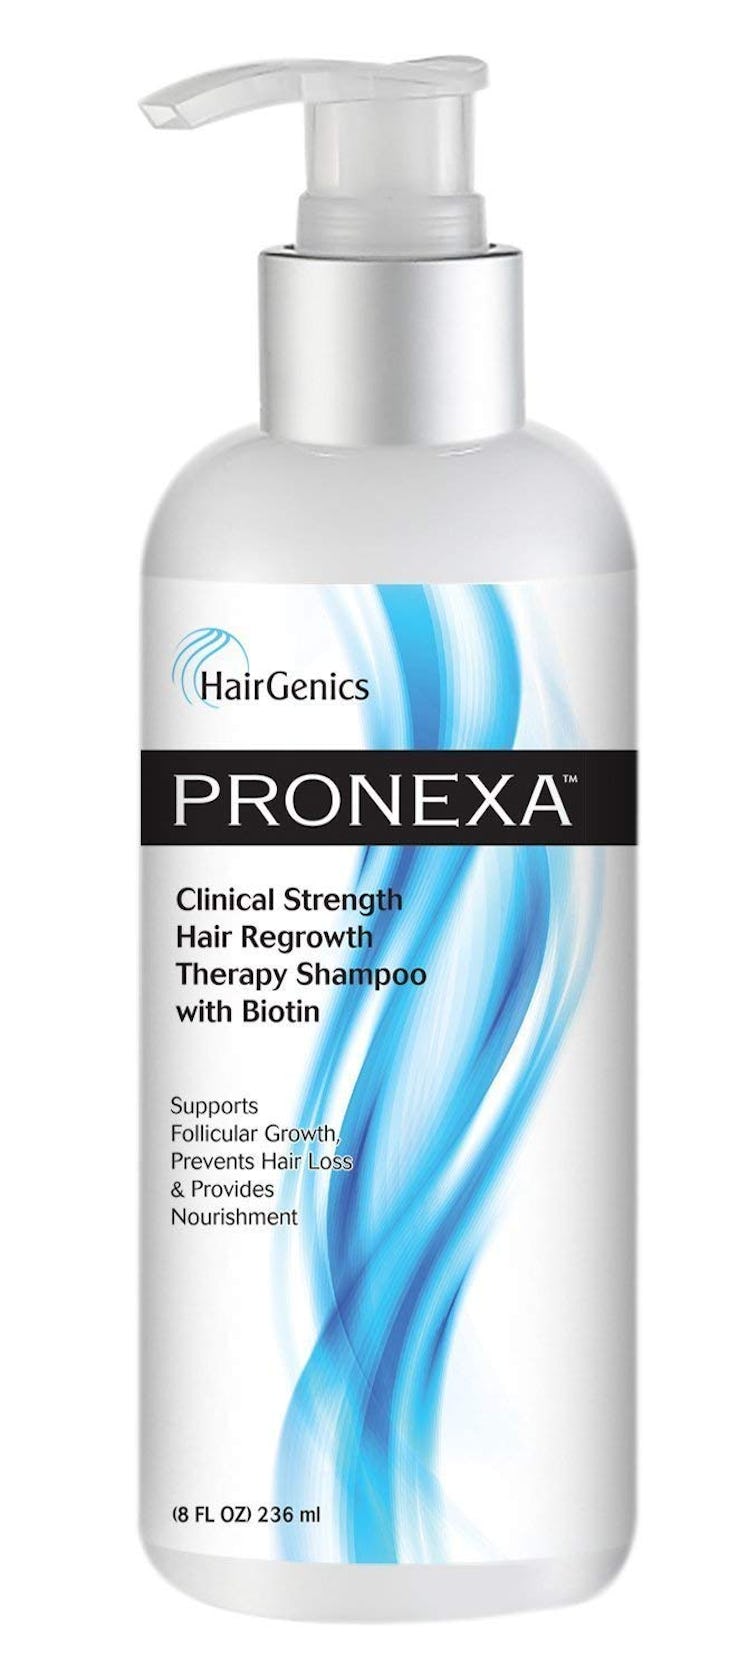 HairGenics Pronexa Hair Growth Therapy Shampoo